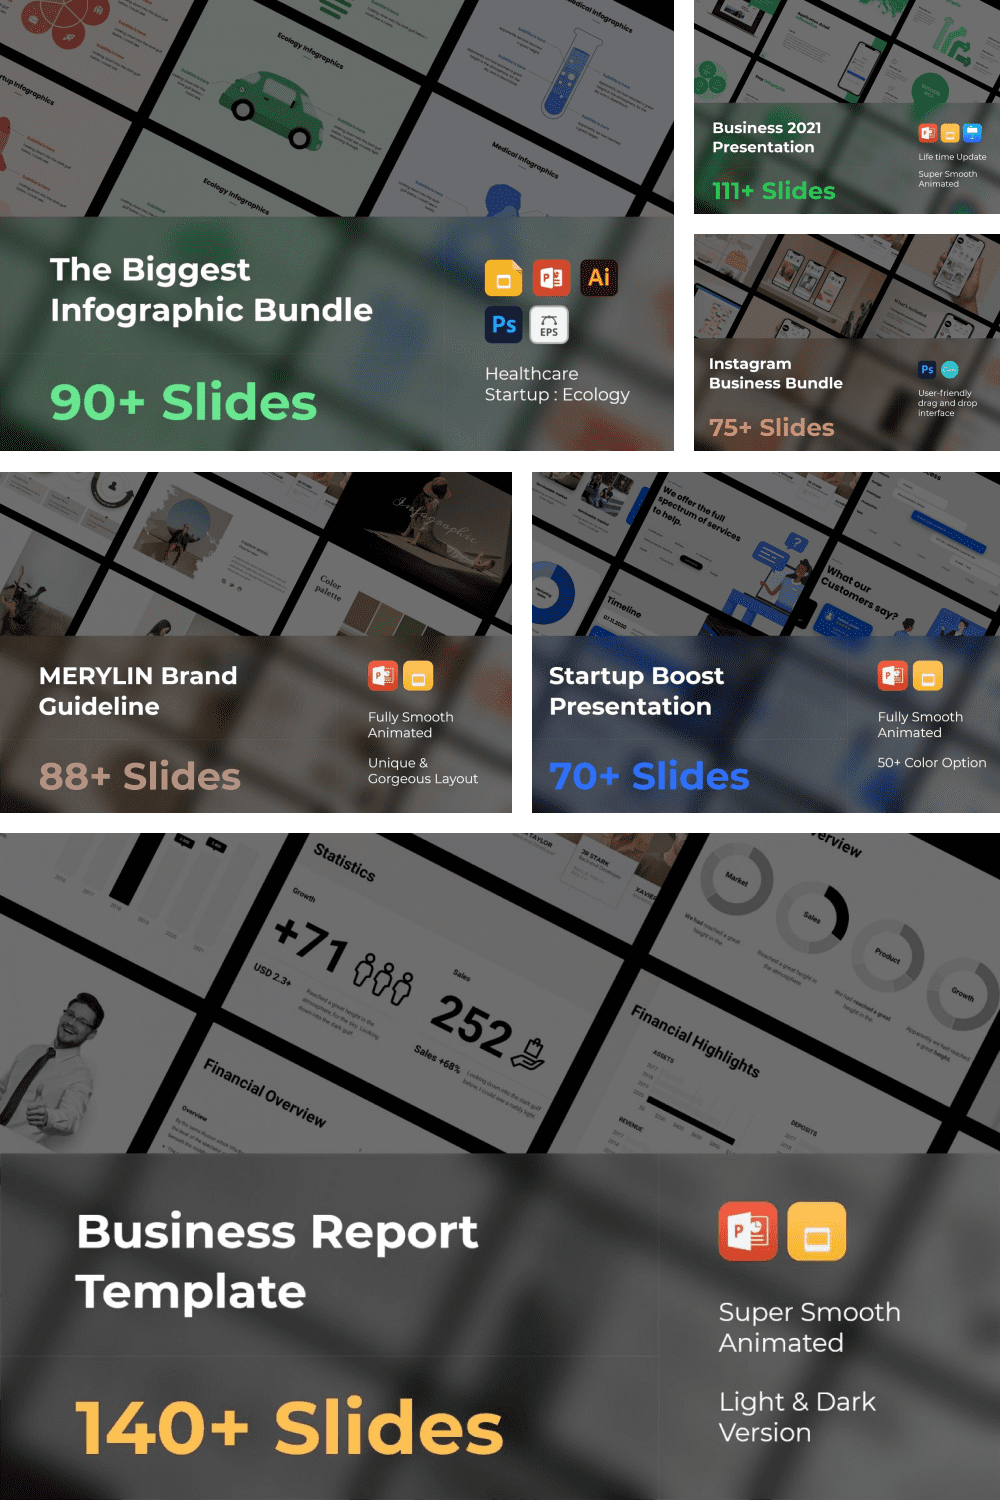 Business Presentation Bundle: 1500 Slides! - MasterBundles - Pinterest Collage Image.